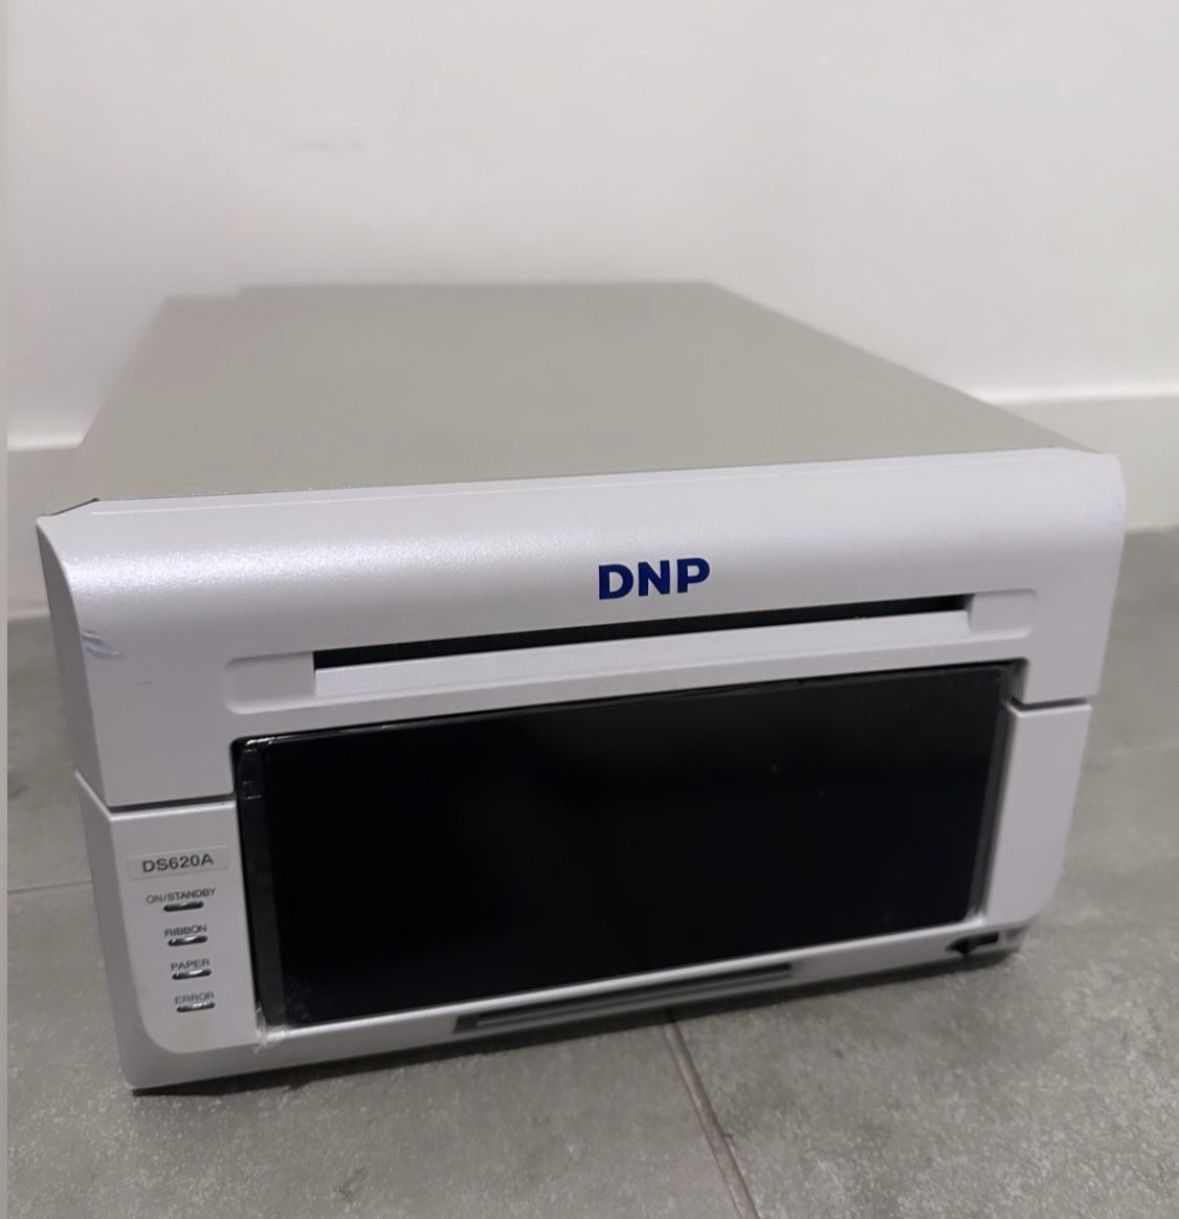 Printer DNP 620-A